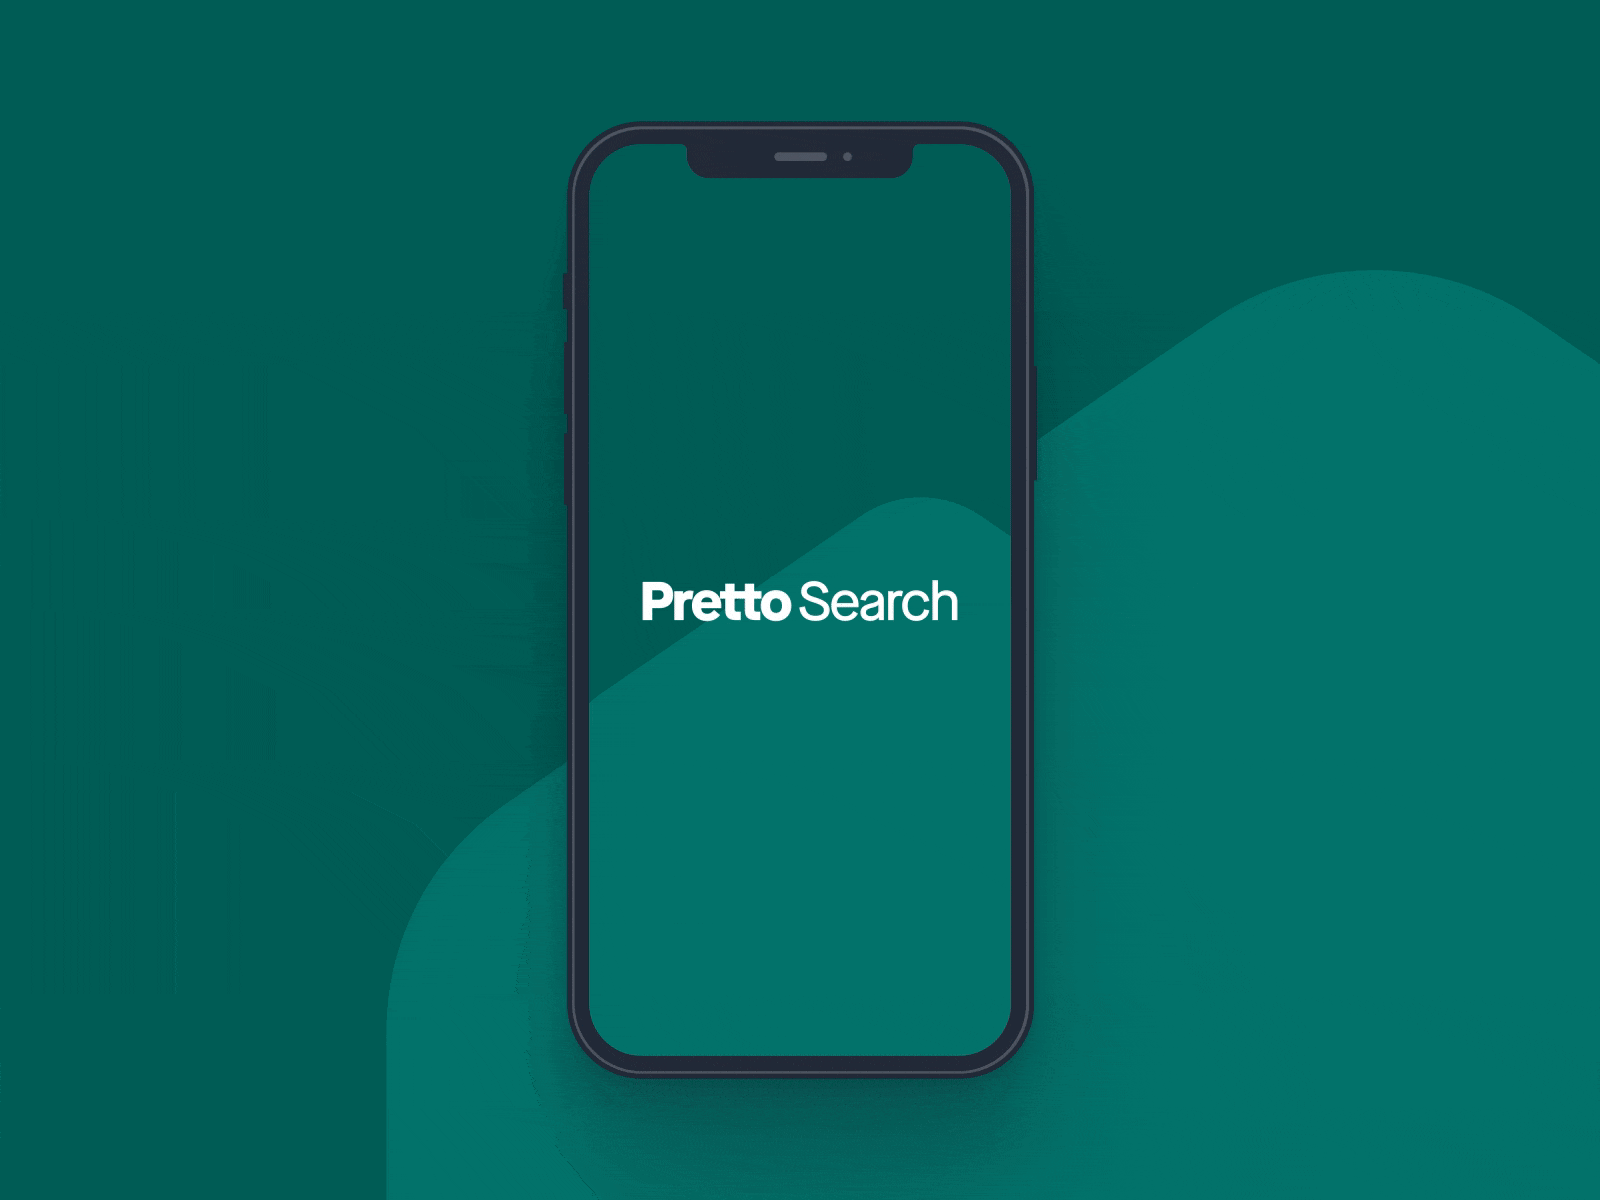 Pretto Search - Rebranding